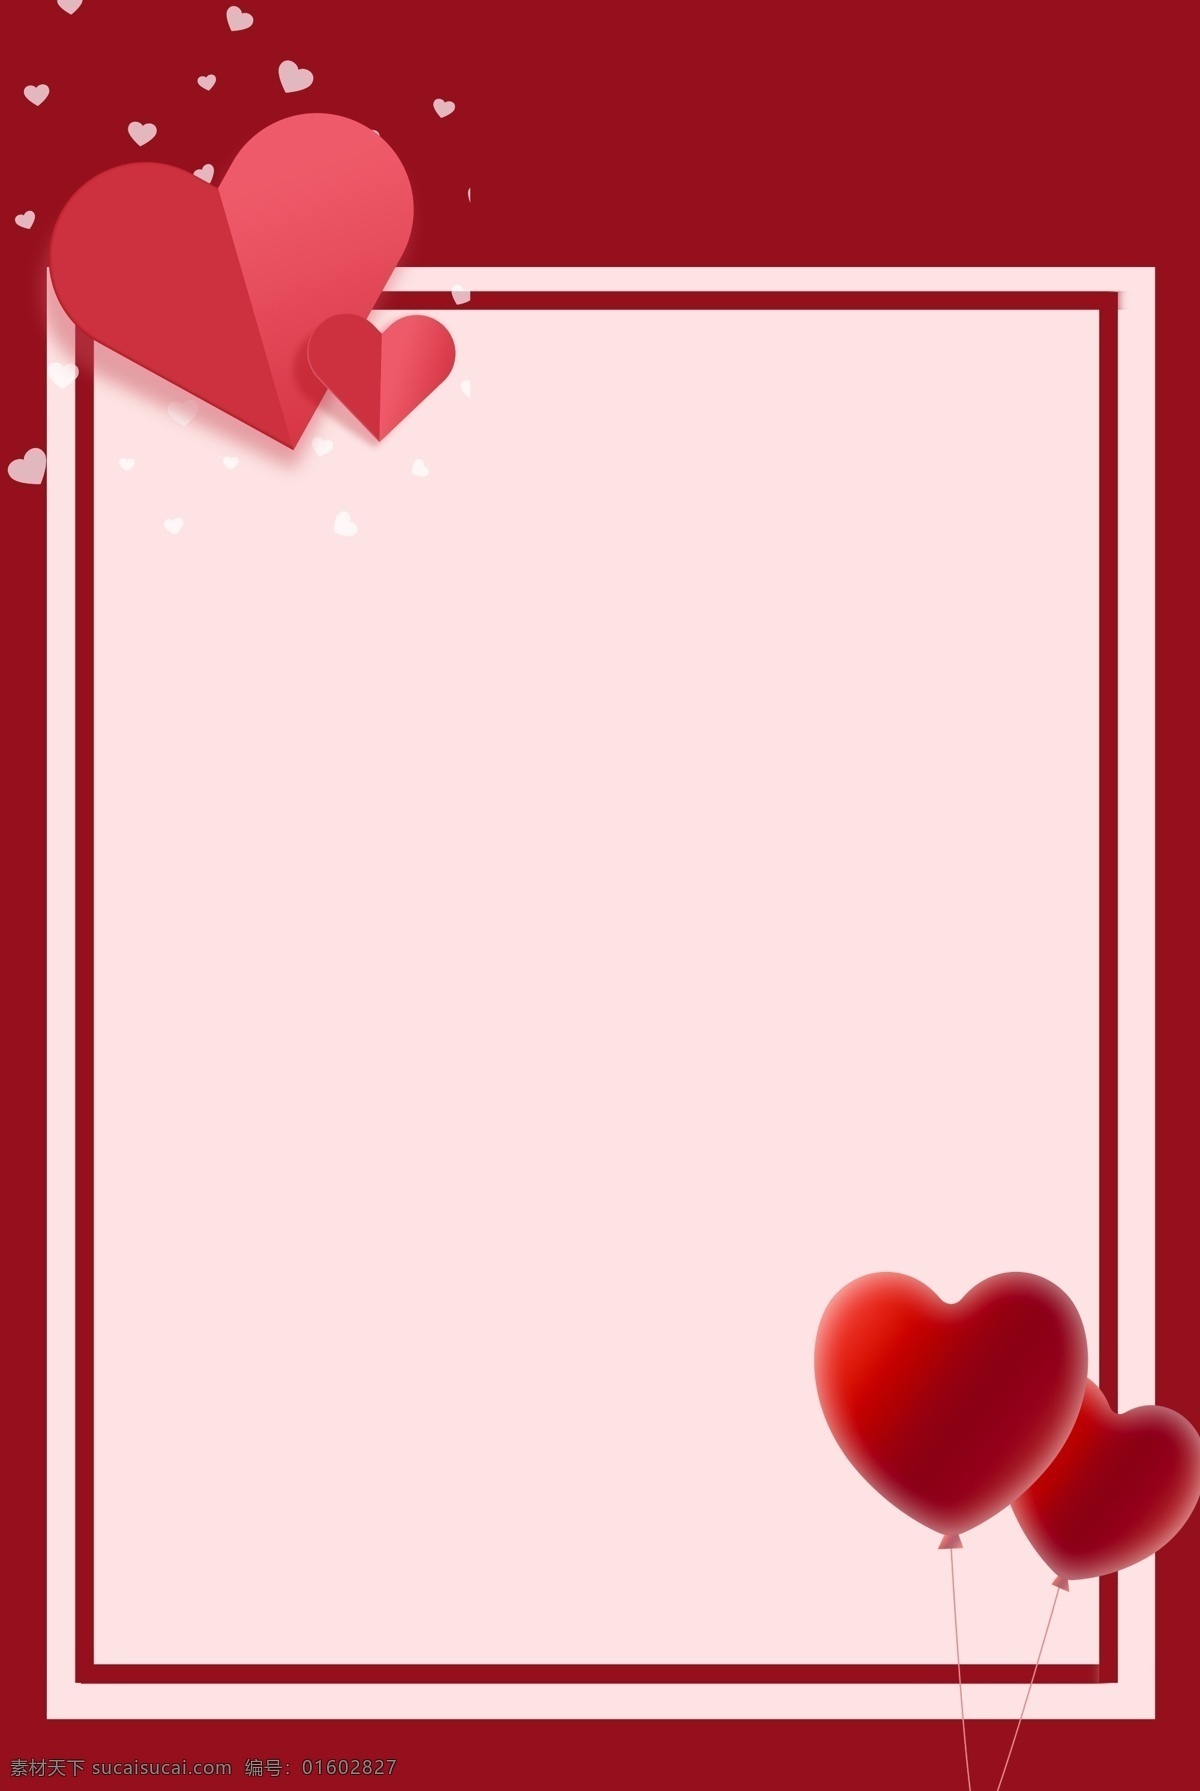 情人节 简约 红色 海报 背景 214 气球 心形 婚庆 婚礼邀请 情人节海报 情人节素材